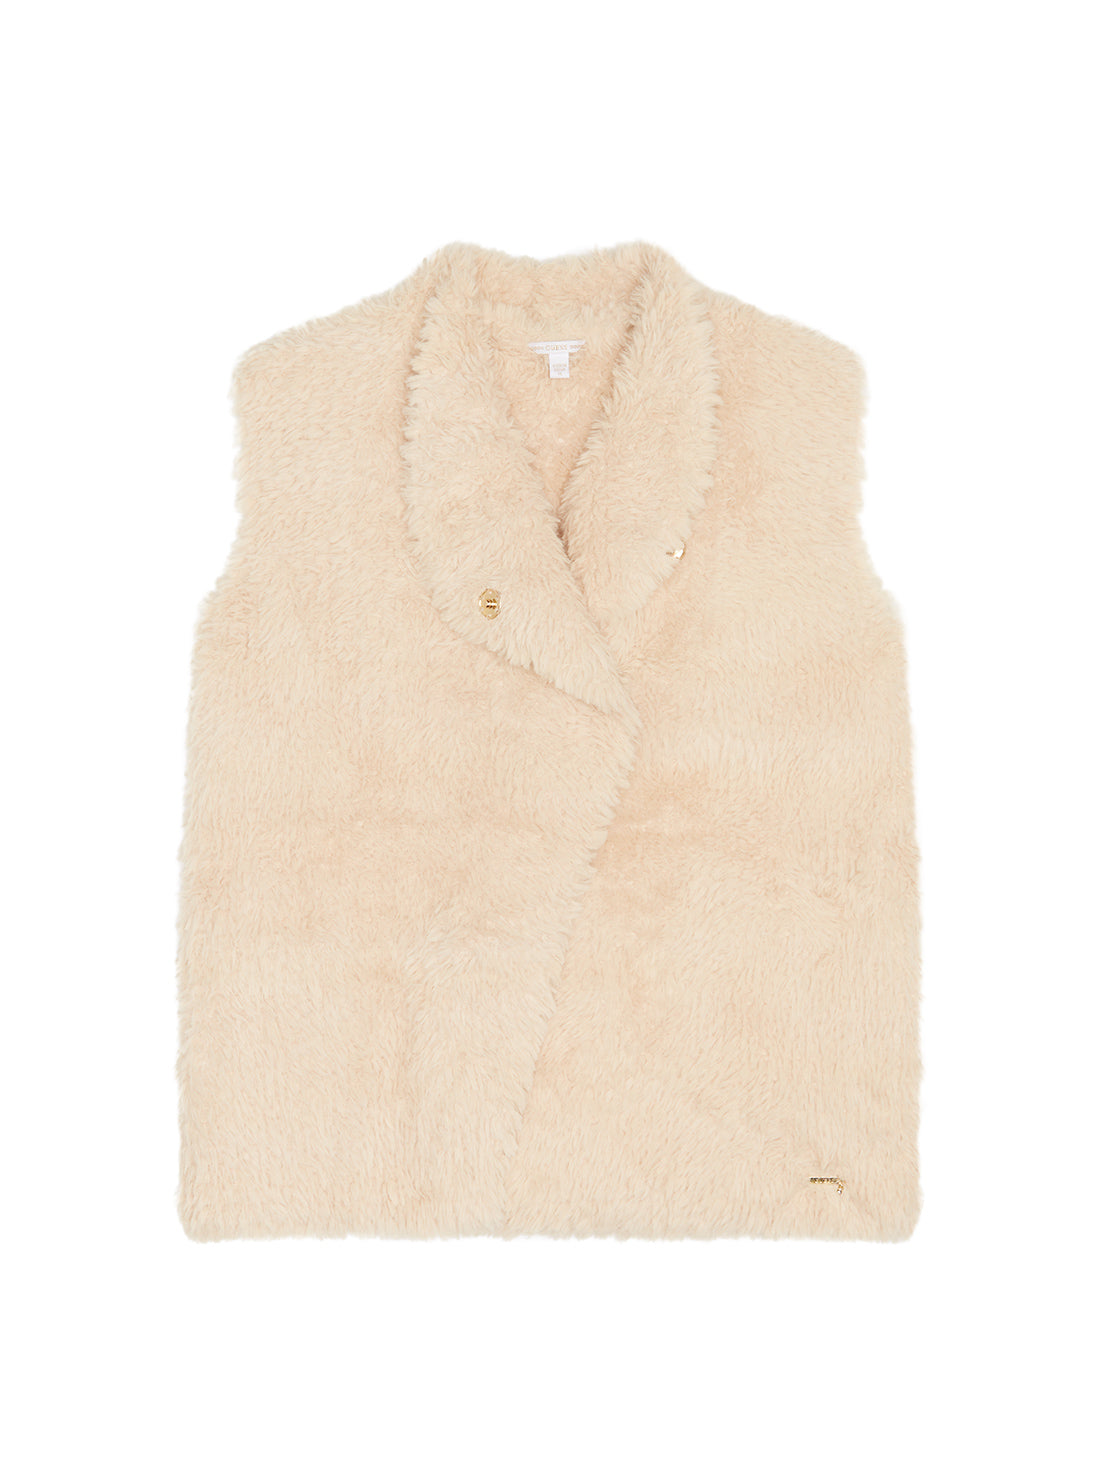 GUESS Big Girls Cream Faux Fur Vest (7-16) J1BN01WE970 Front View